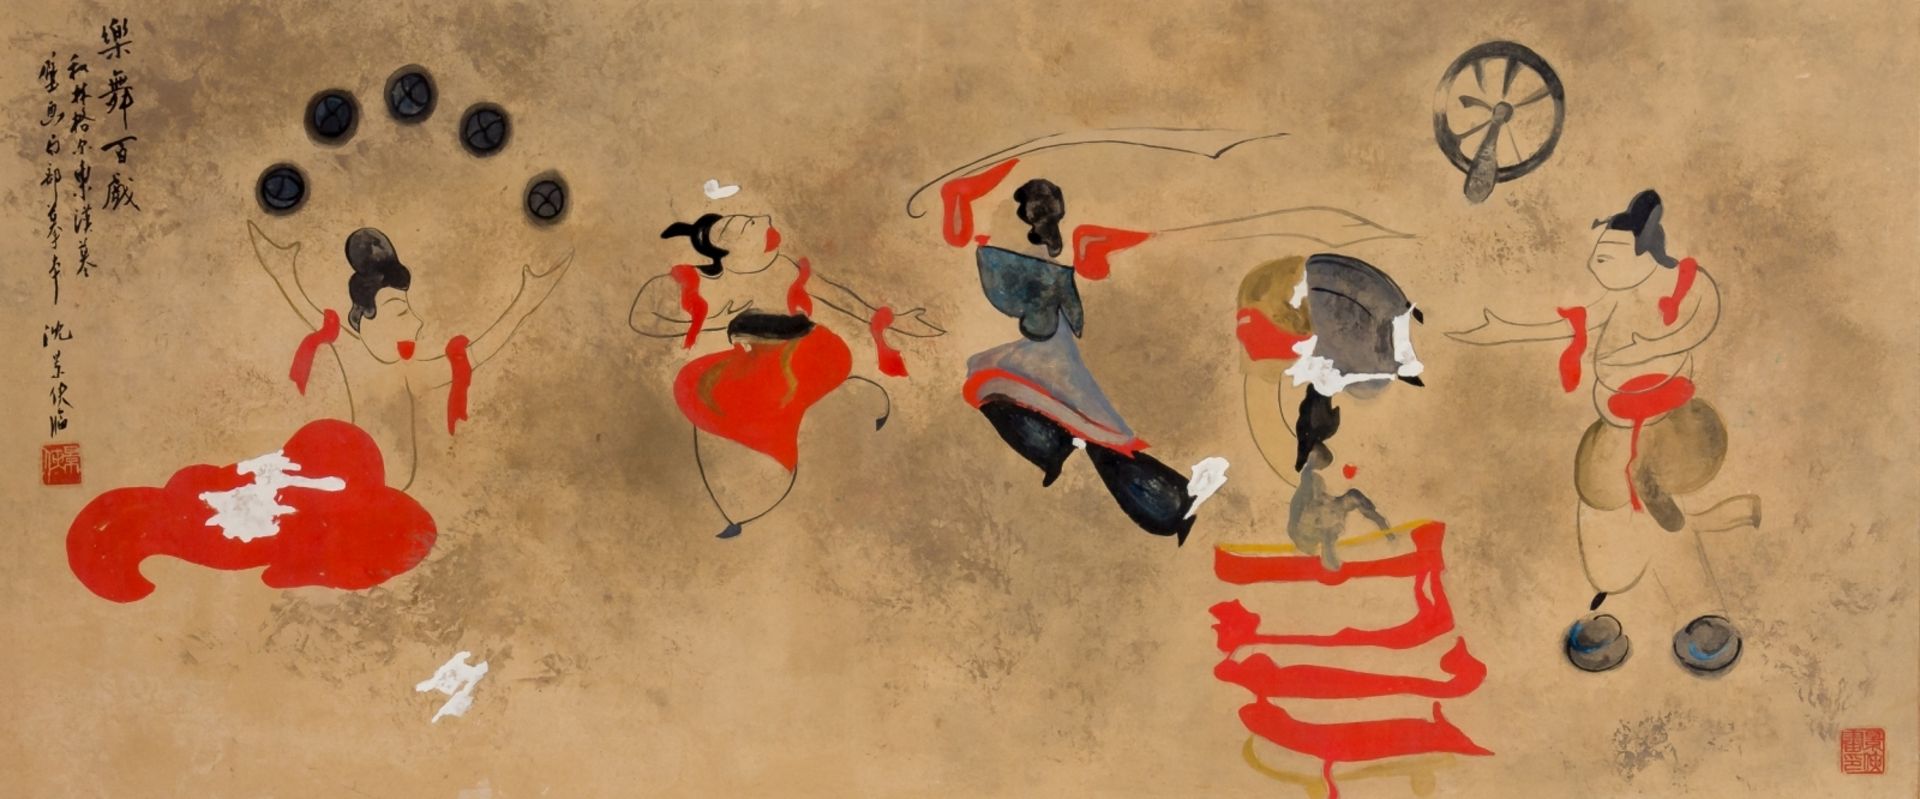 Tänzerinnen und Akrobaten nach einer antiken WandmalereiChina, Aquarell und Tusche, gemalt von